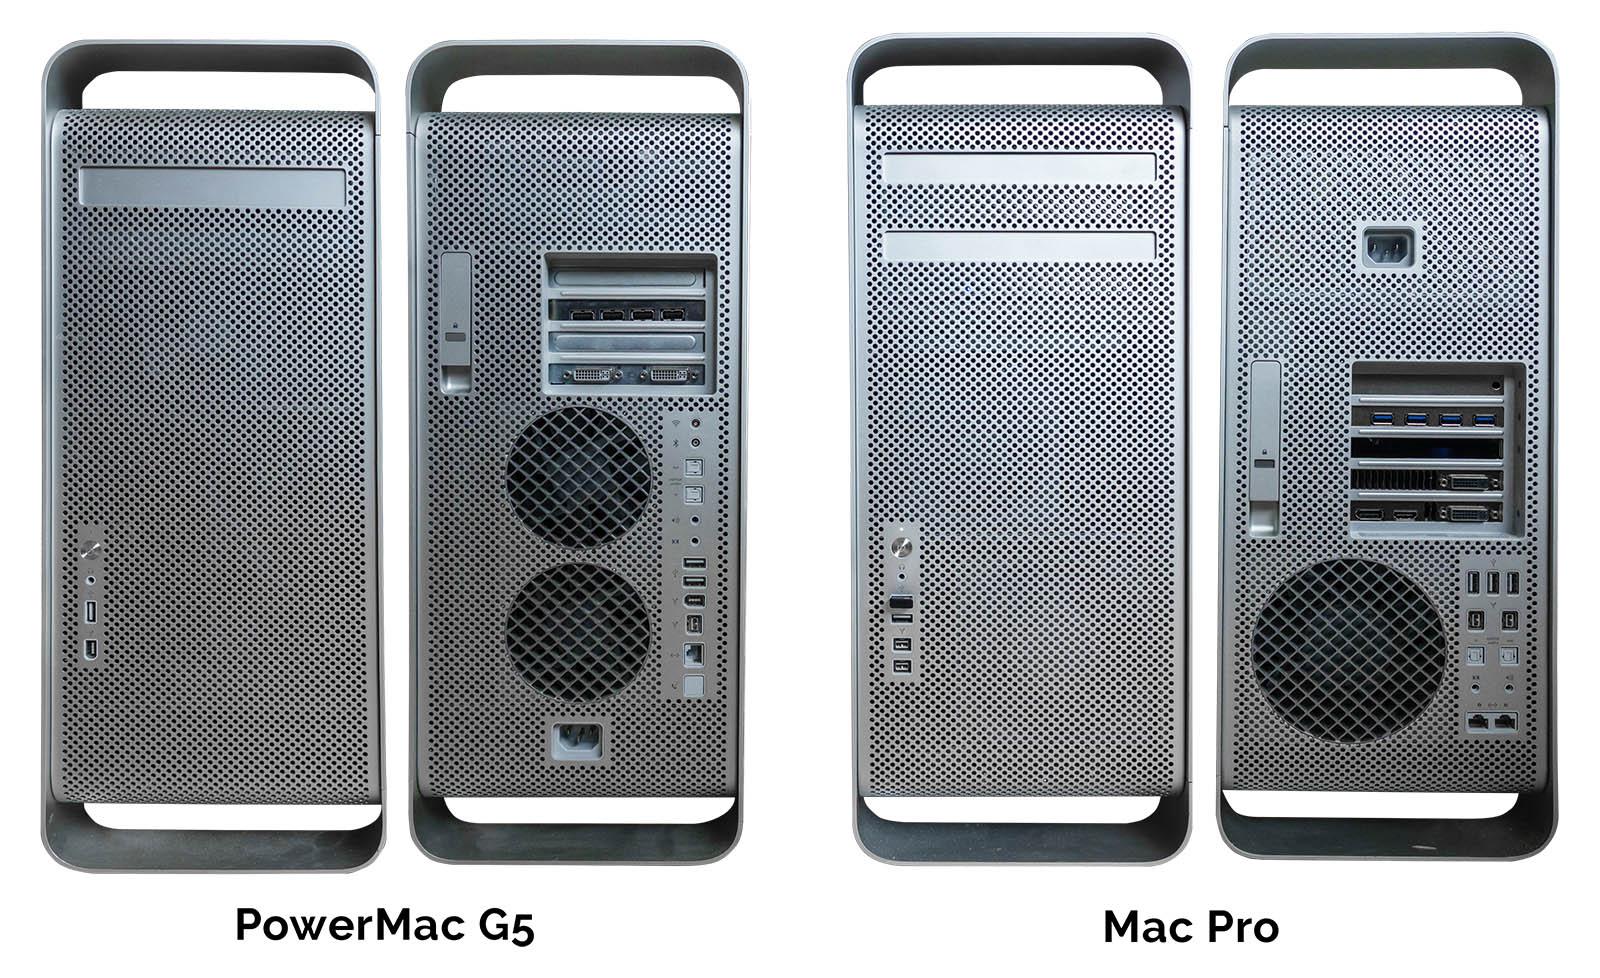 PowerMac G5 vs. Mac Pro